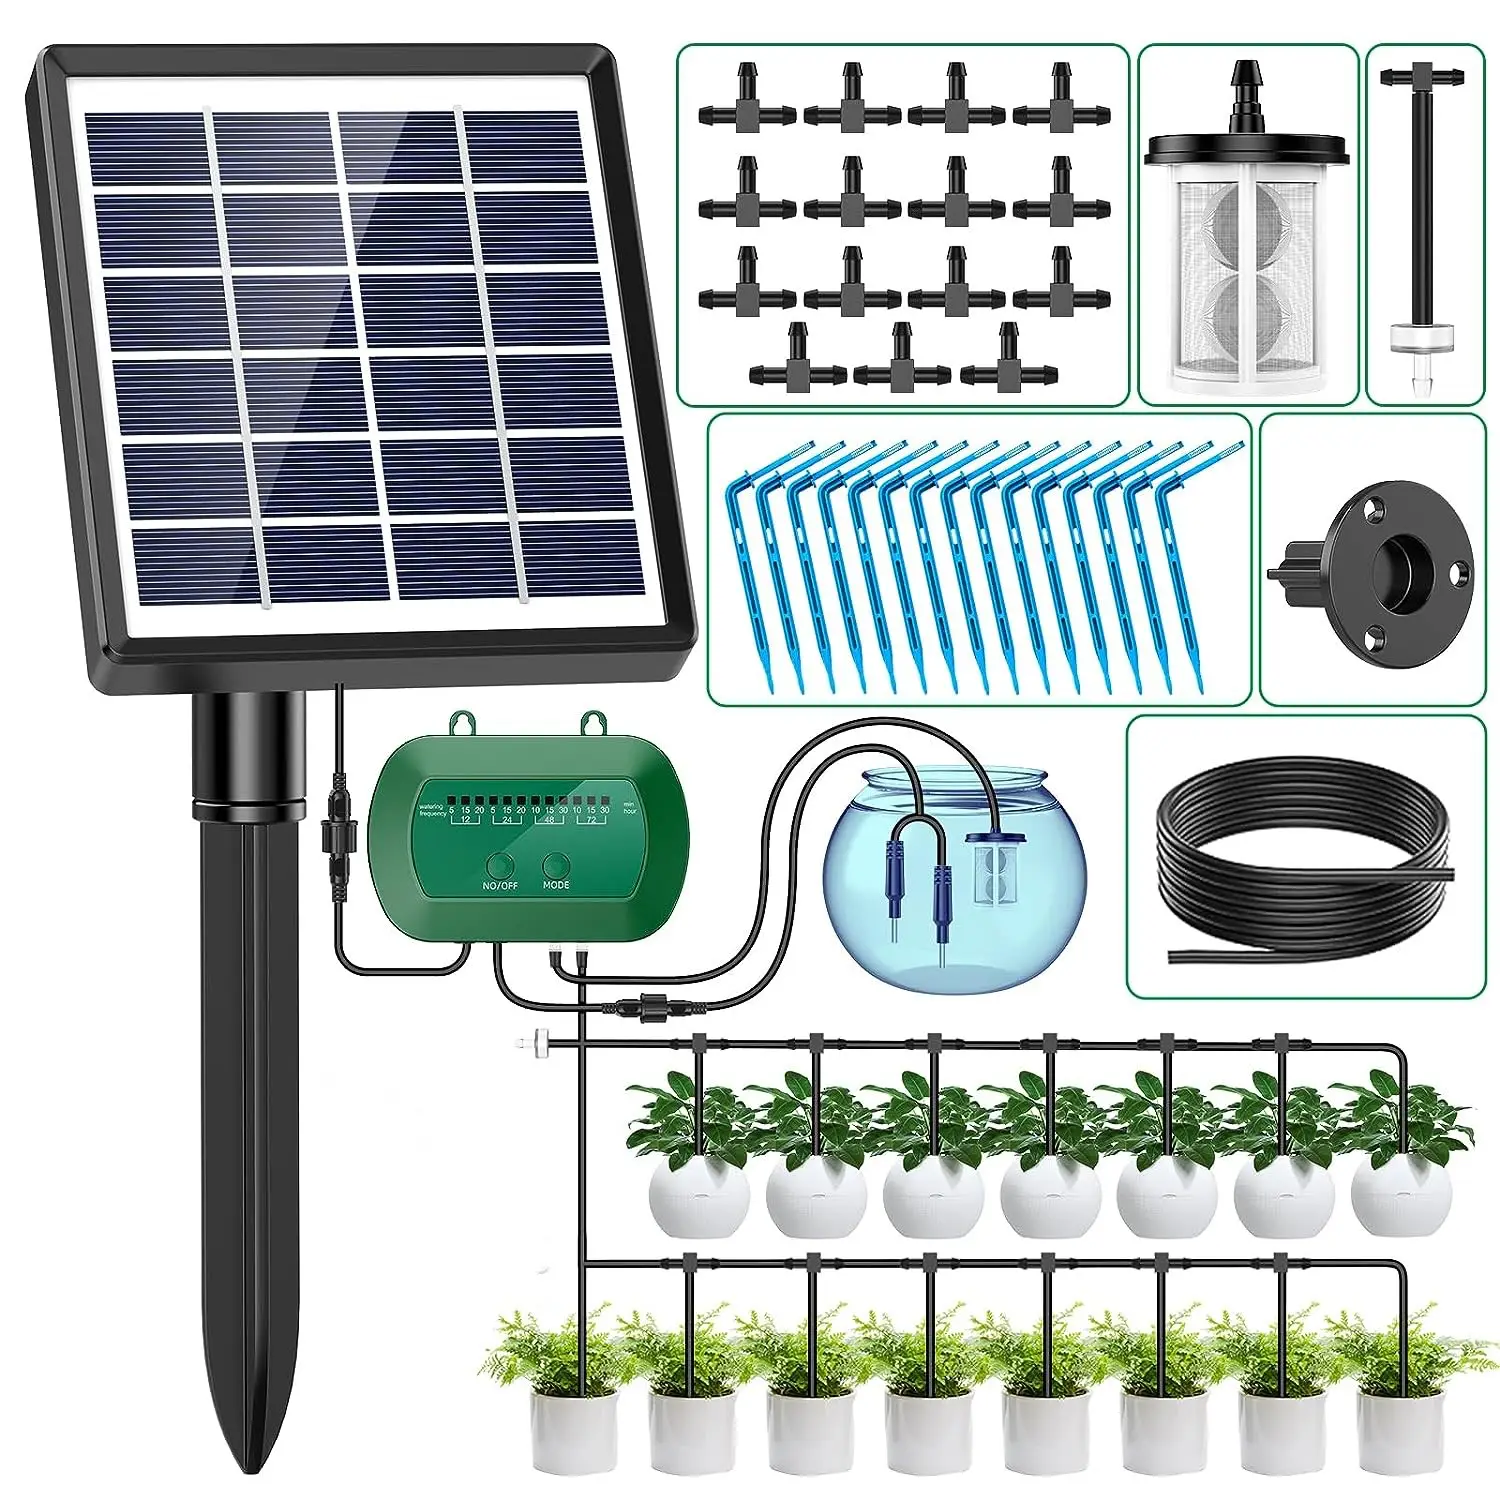 نظام ري وري بالتنقيط بالطاقة الشمسية آلي للشرفة مجموعة ري ري و ري ذاتي للزرع المائي للحدائق الداخلية